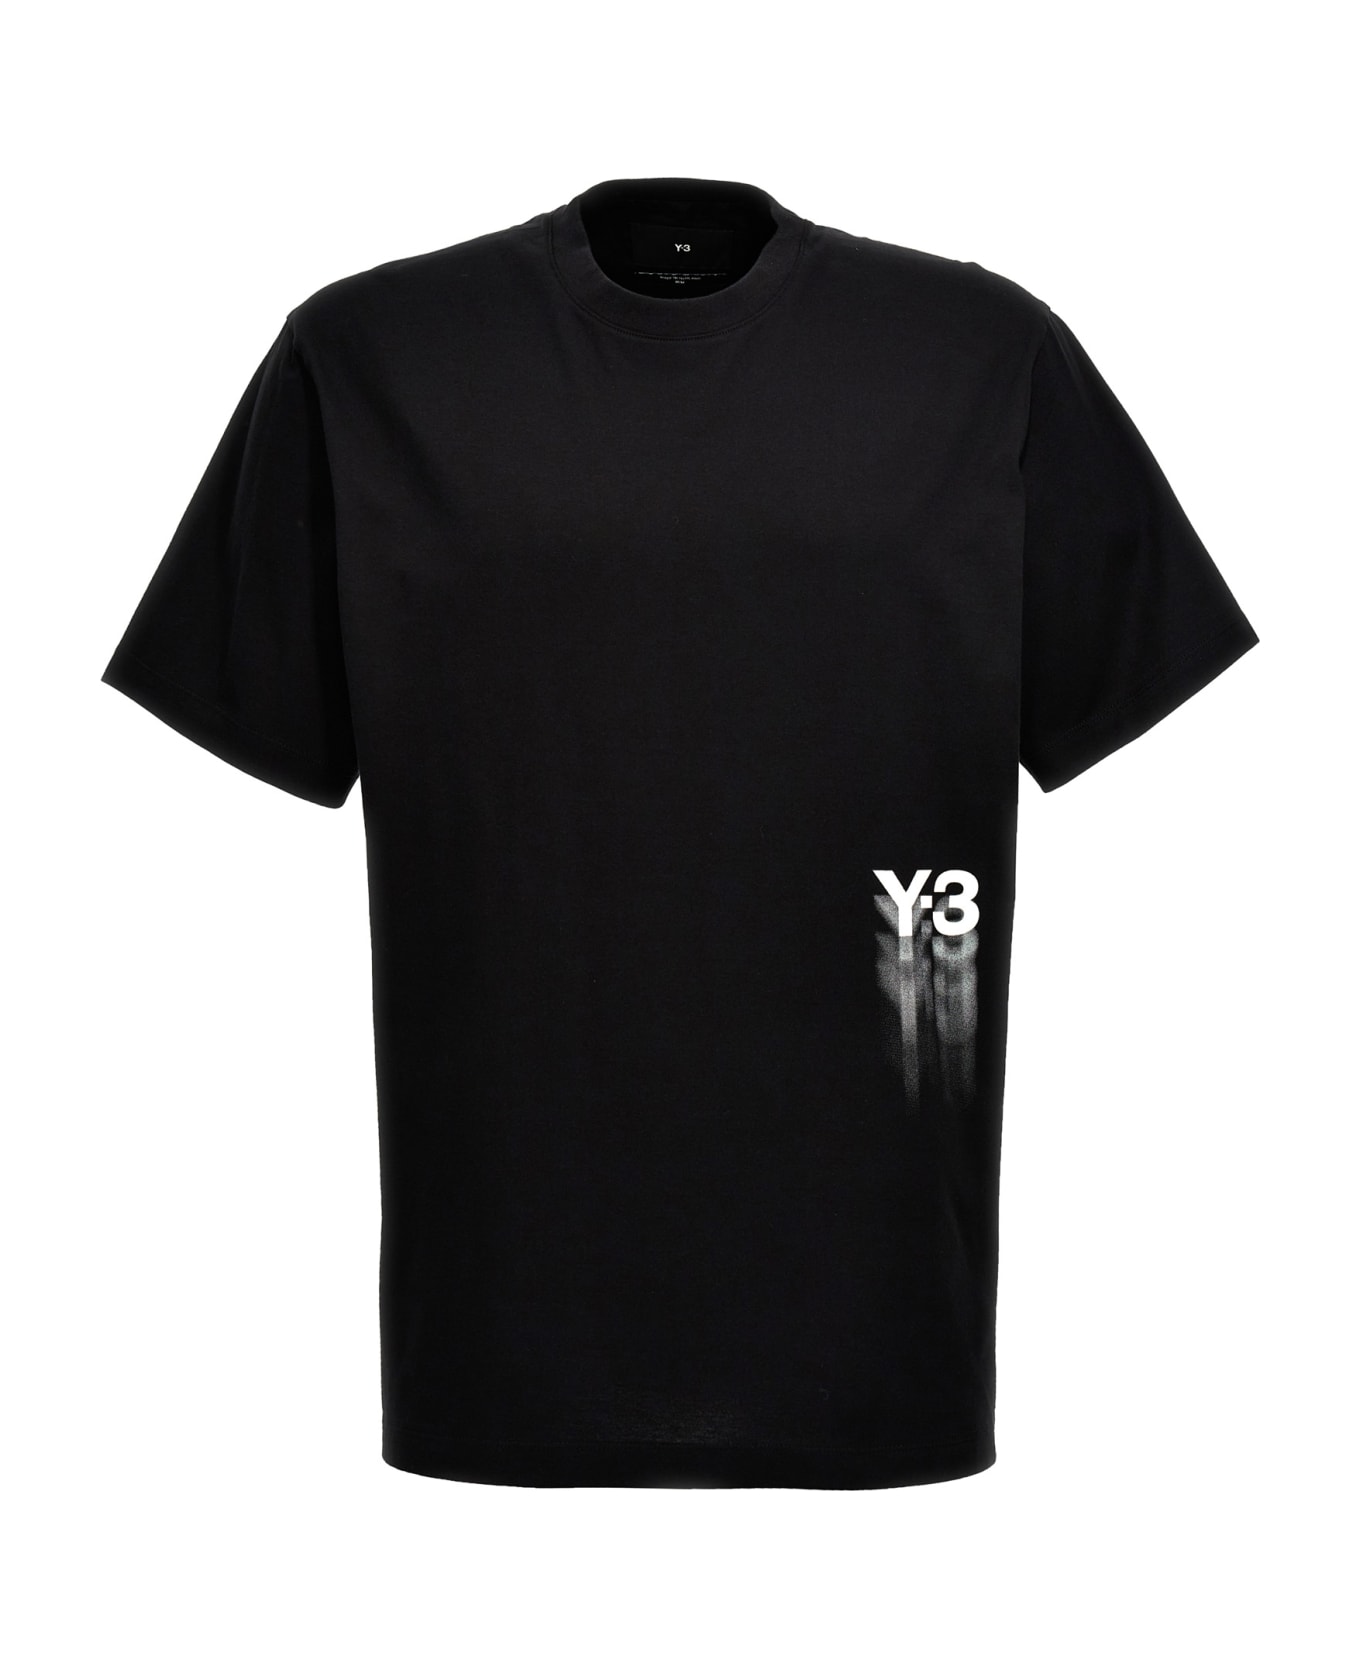 Y-3 'gfx' T-shirt - Black   Tシャツ